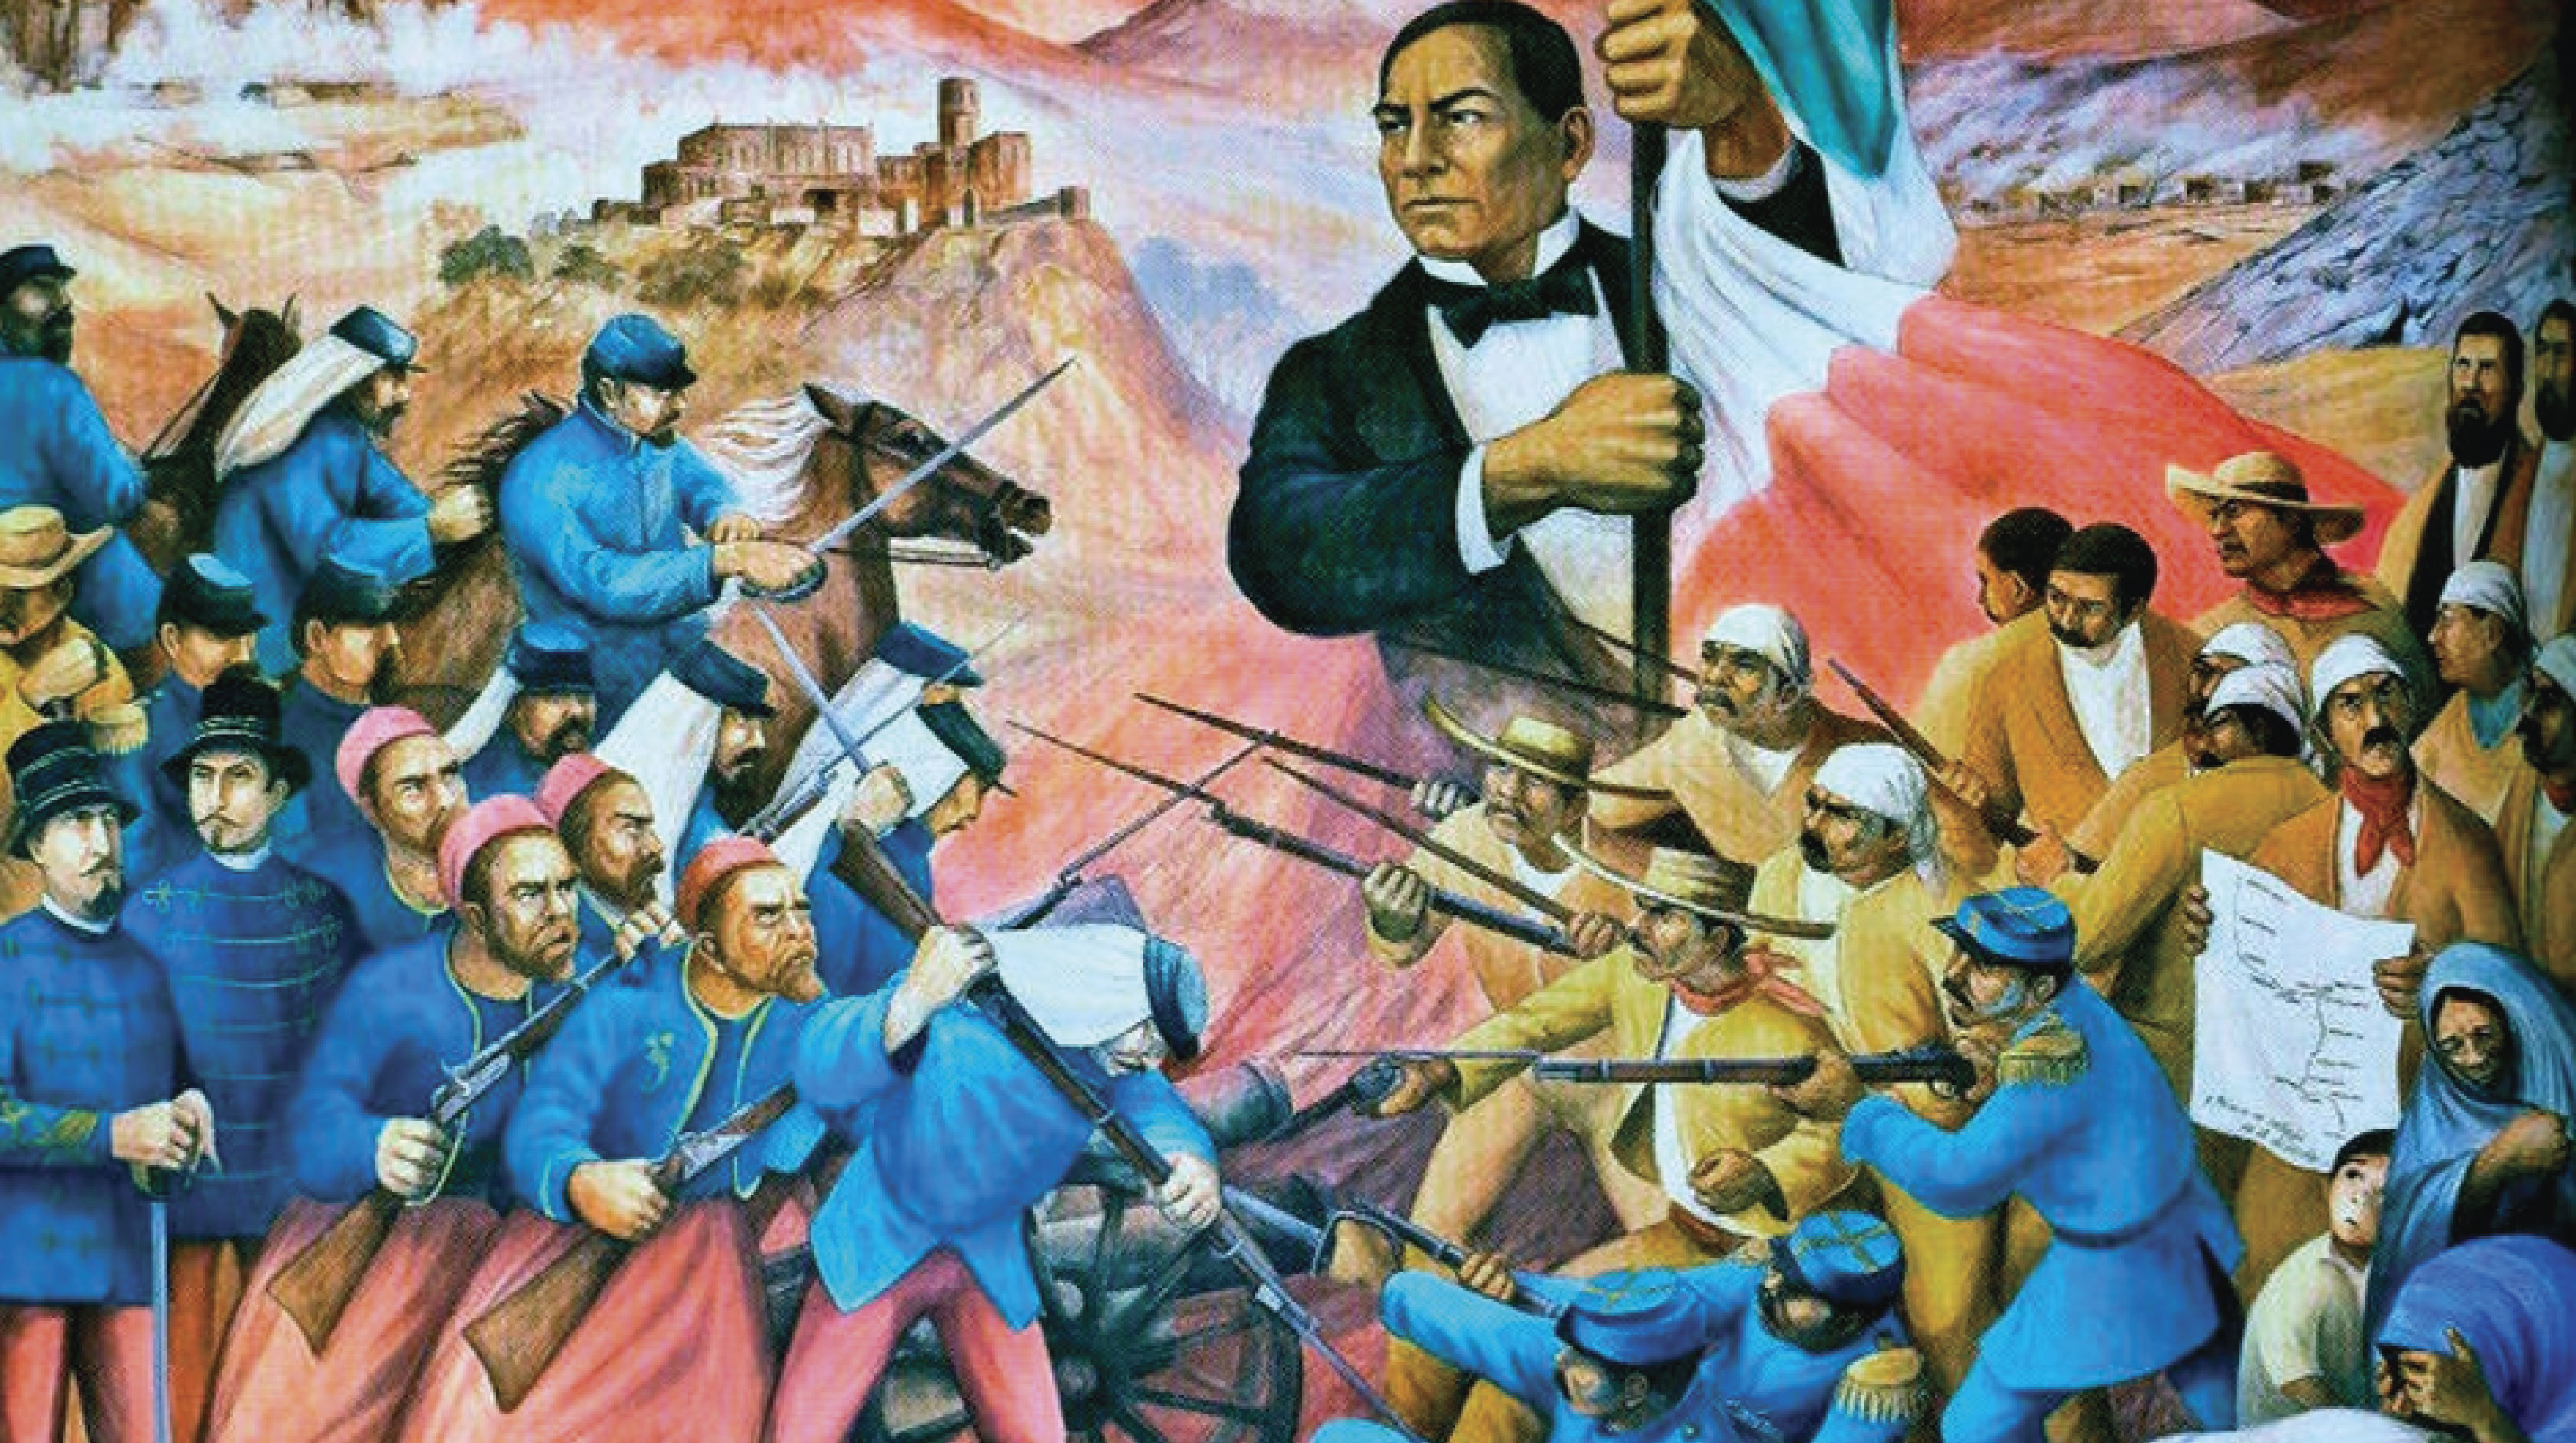 Por qué celebramos la Batalla de Puebla el 5 de mayo? - Diario de Chiapas